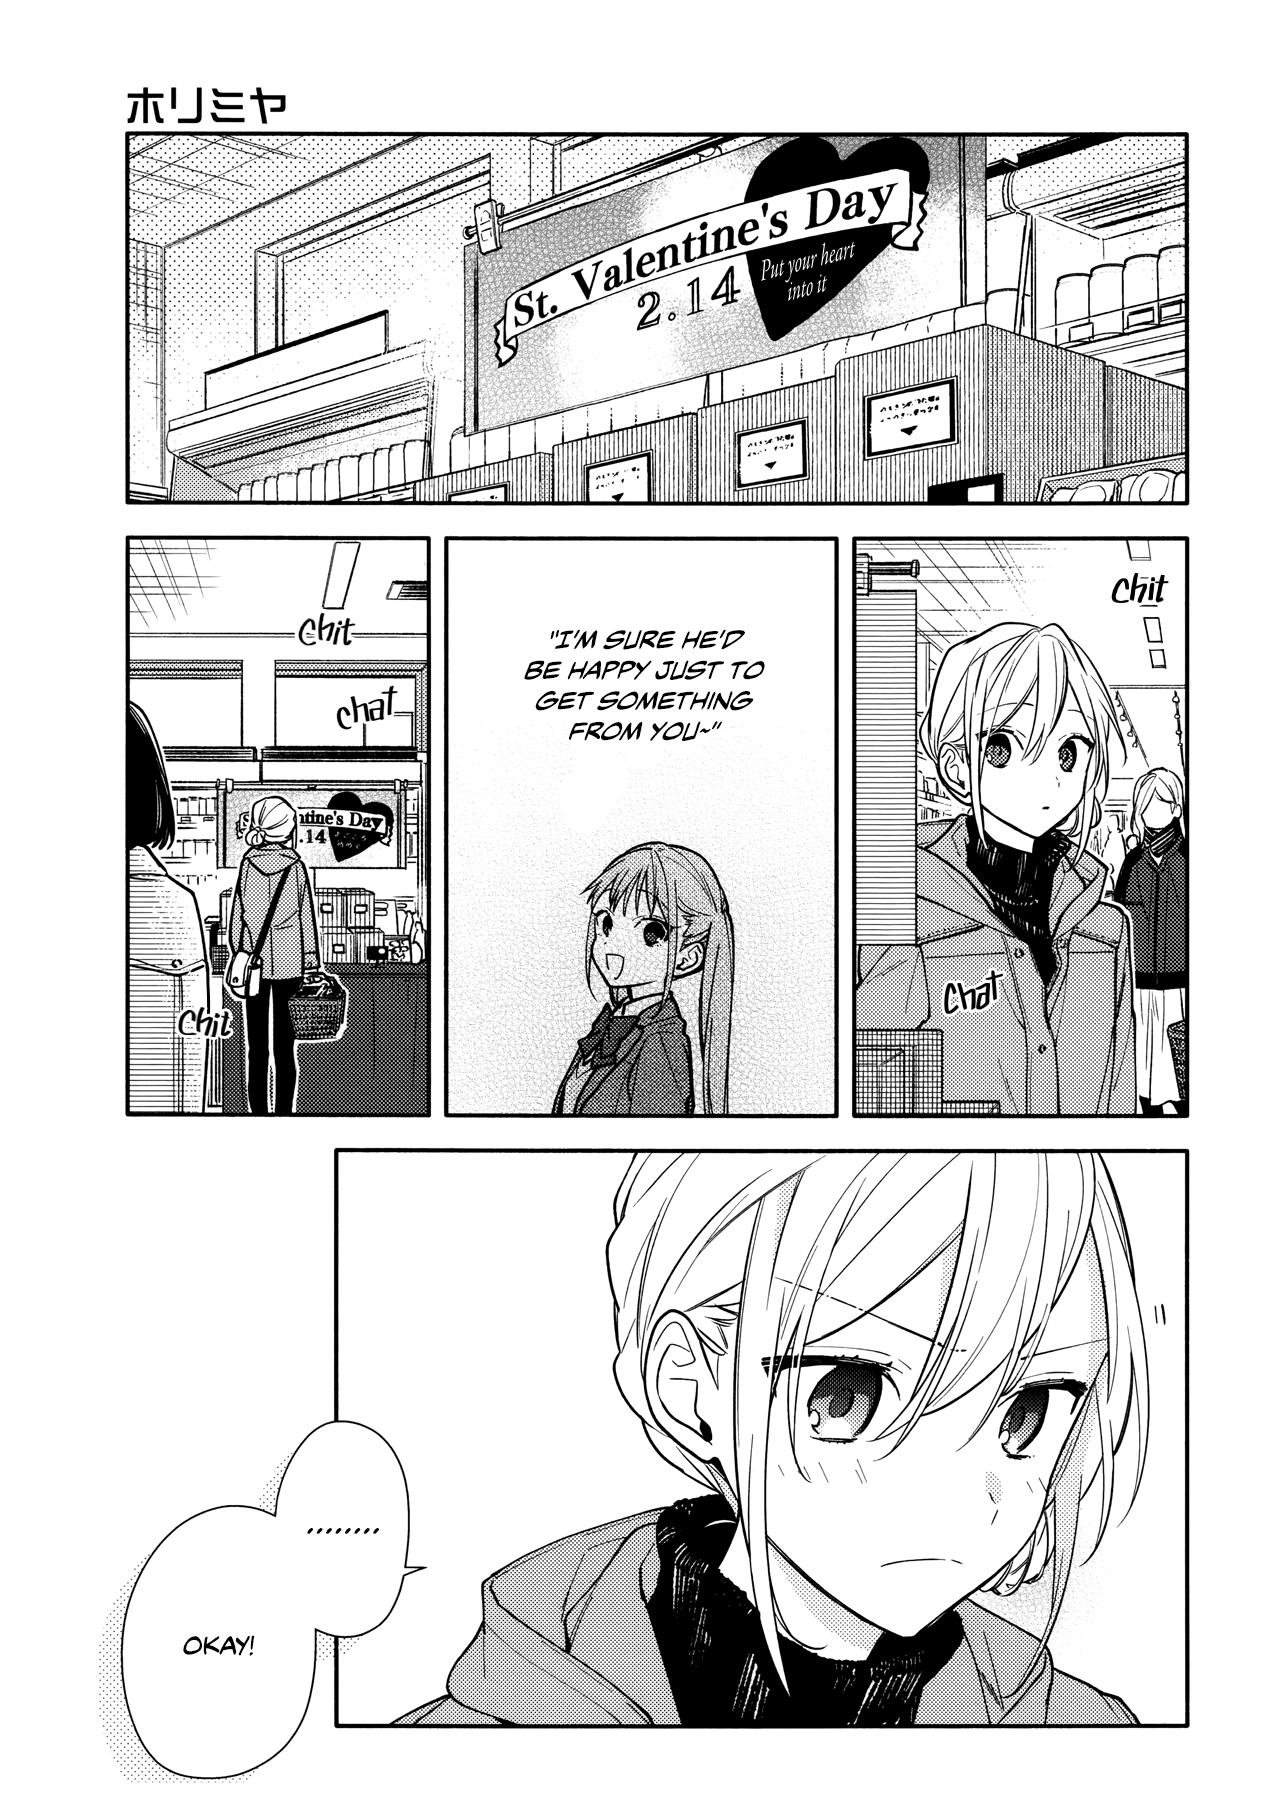 Horimiya Manga, Chapter 82 page 2